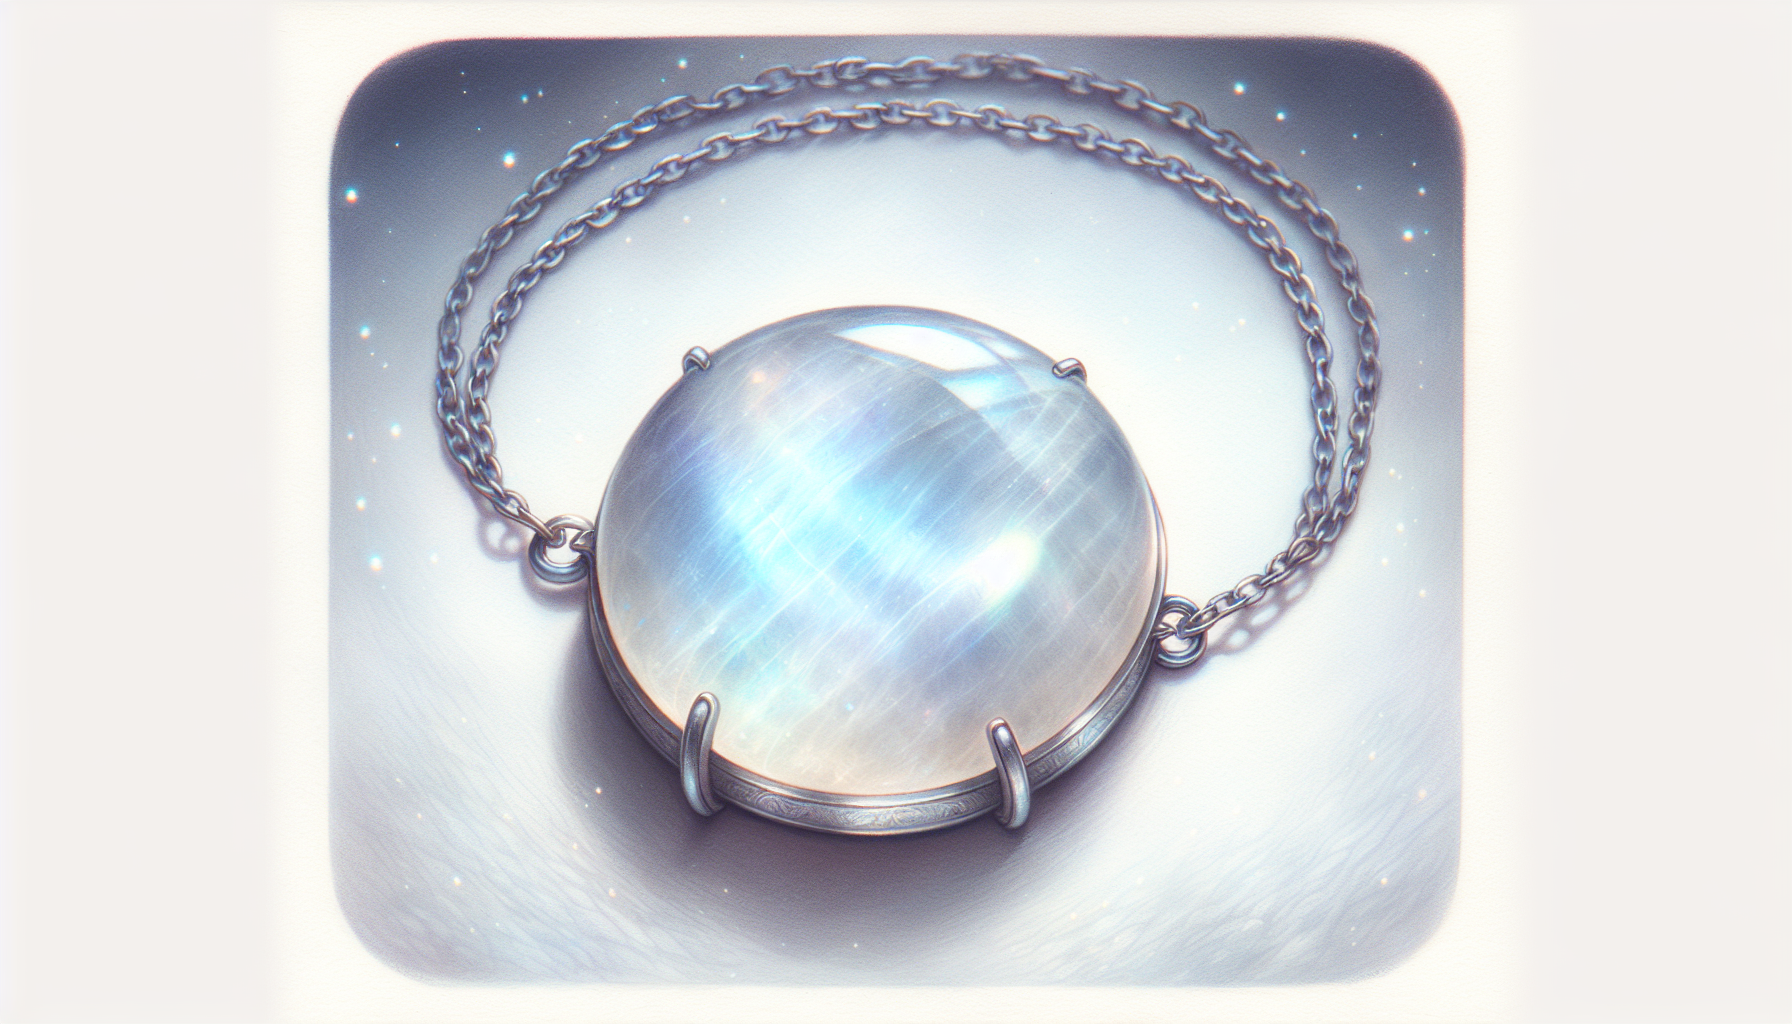 Illustration of a serene moonstone necklace symbolizing emotional balance and healing